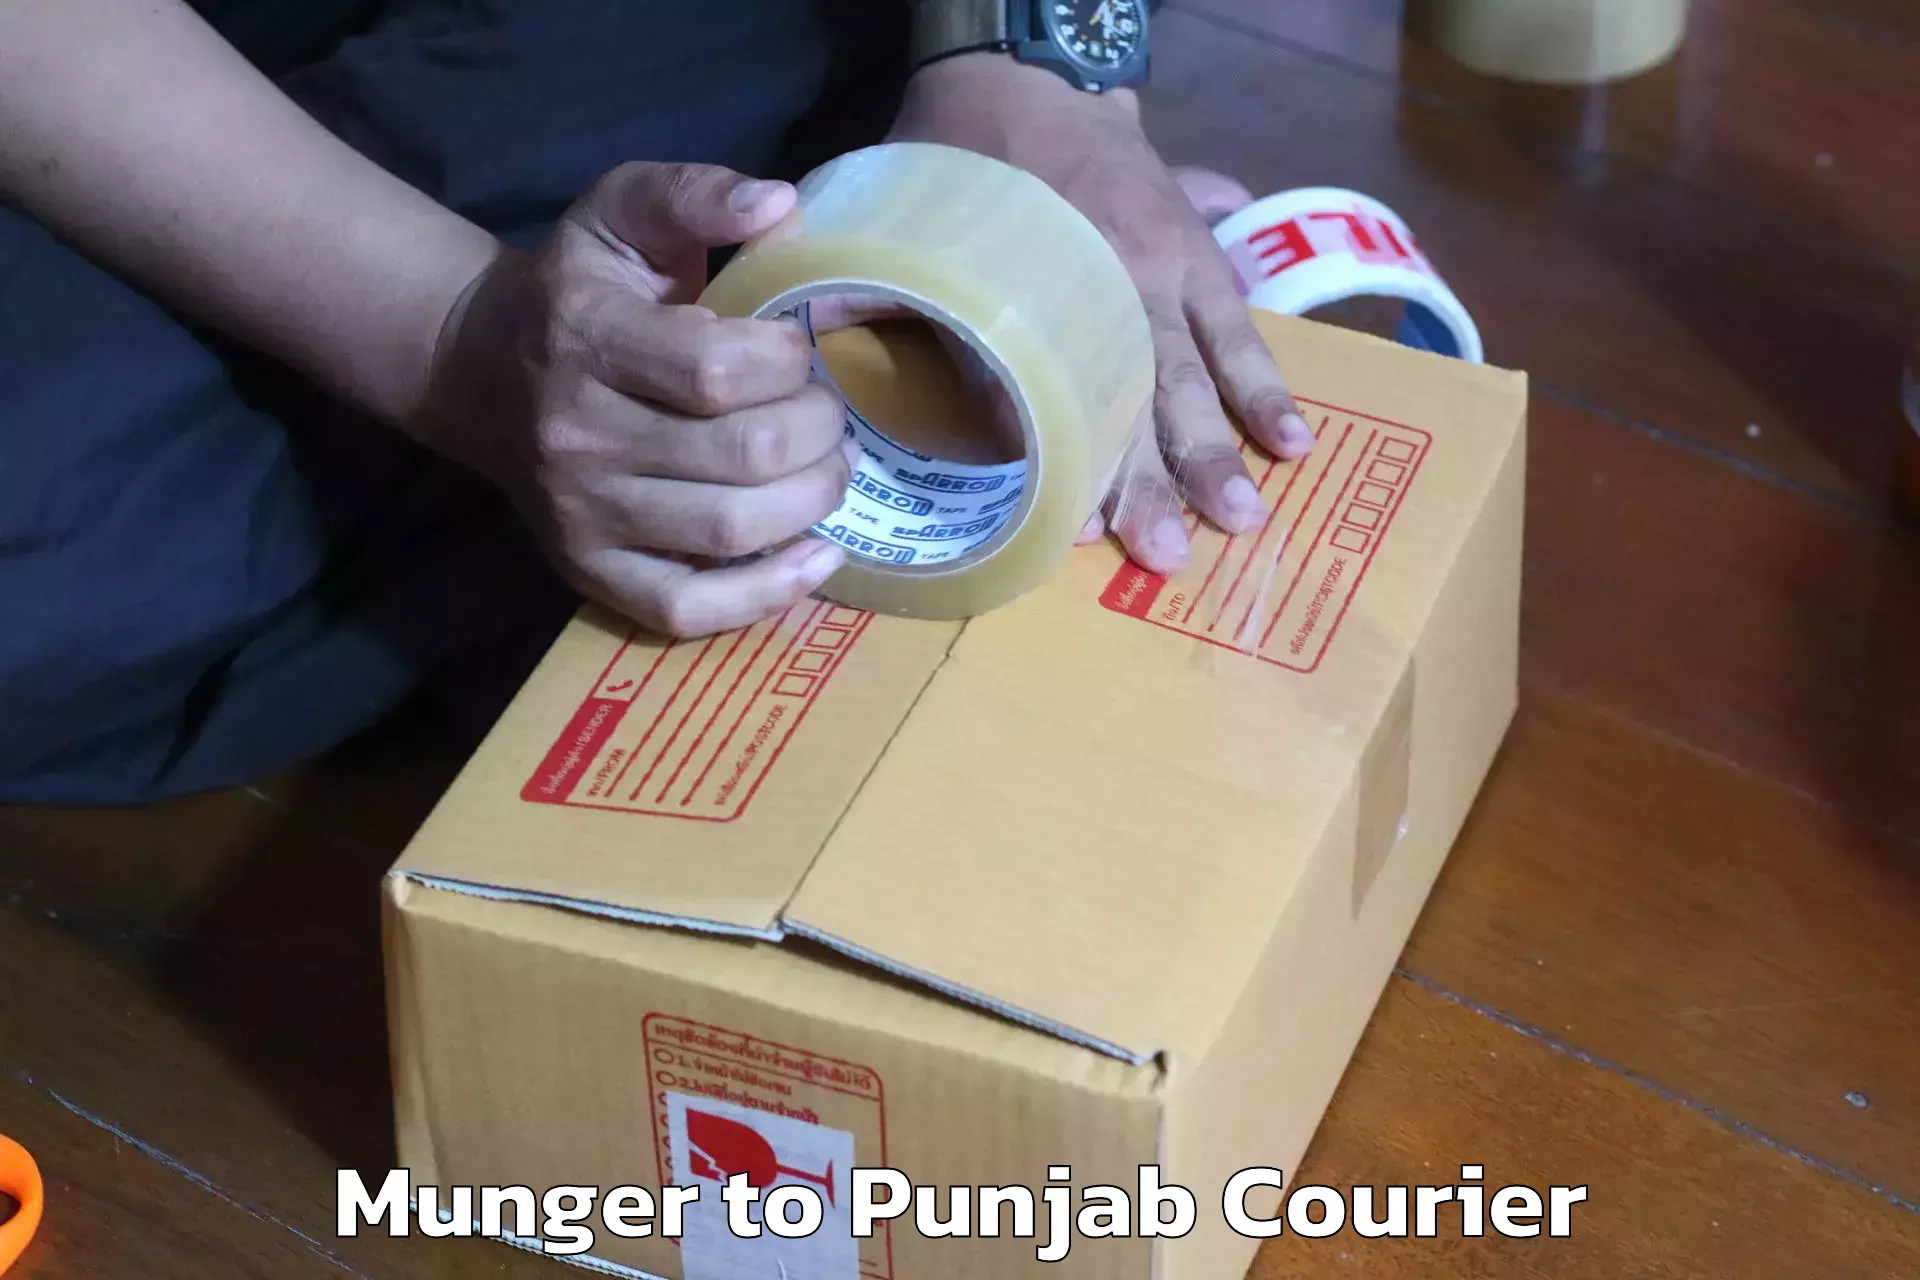 Home shifting experts Munger to Punjab